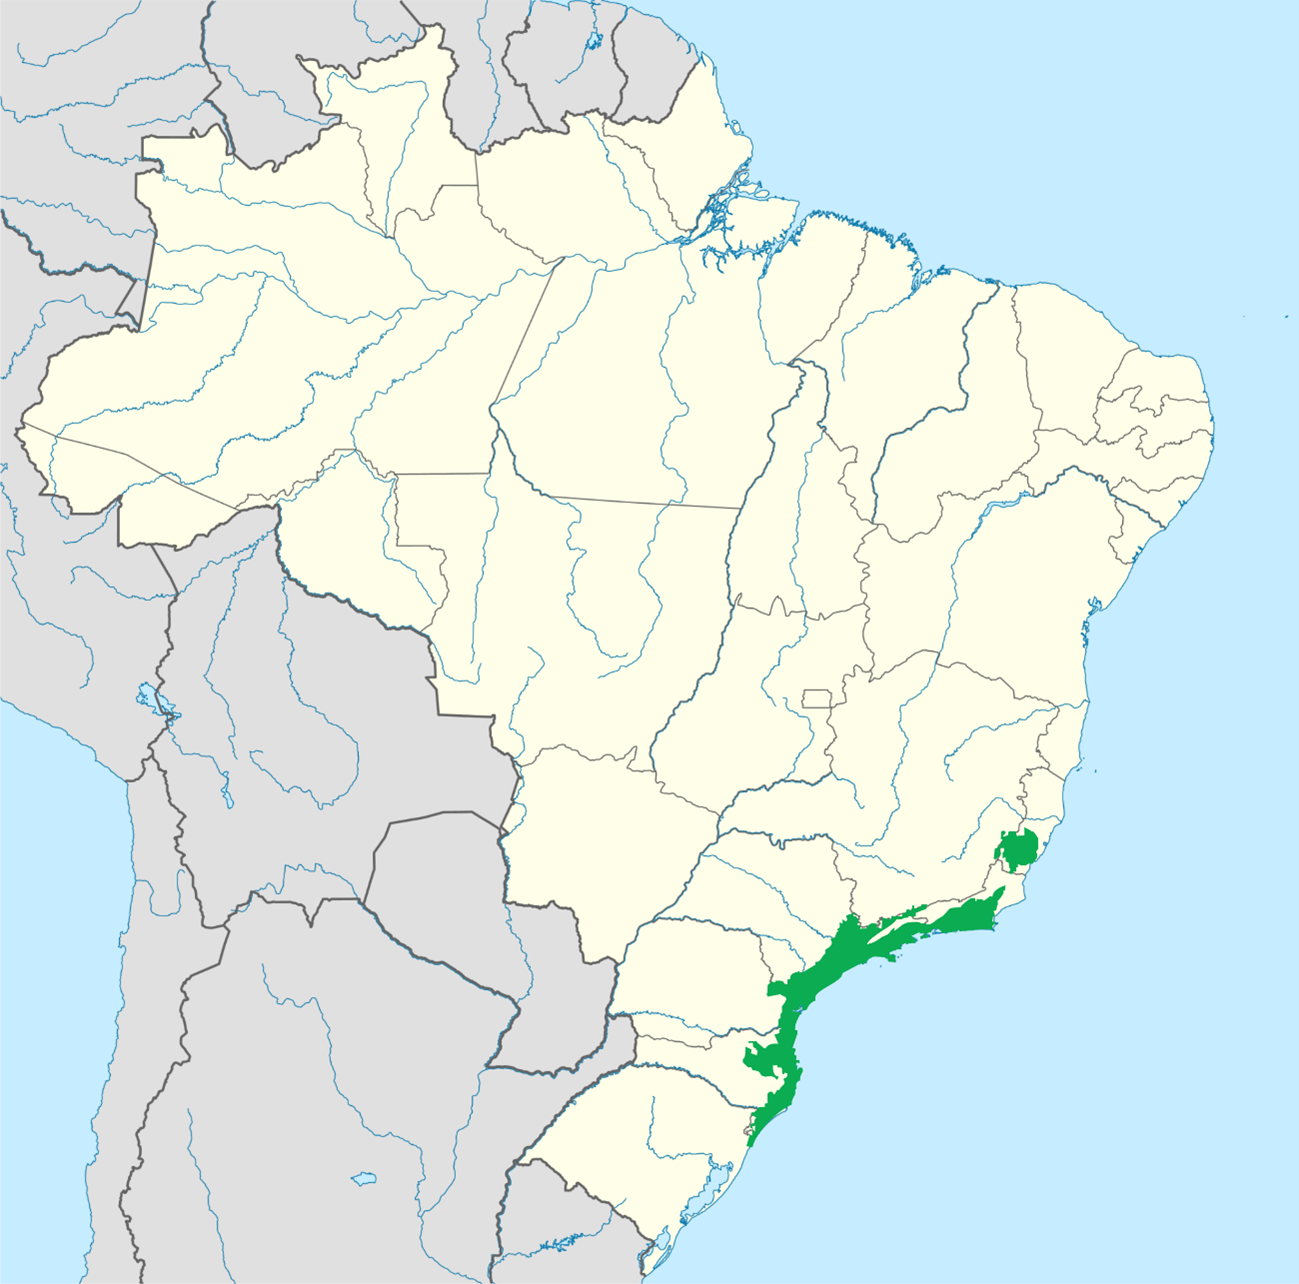 mapa-administrativo-de-portugal - Espírito Viajante